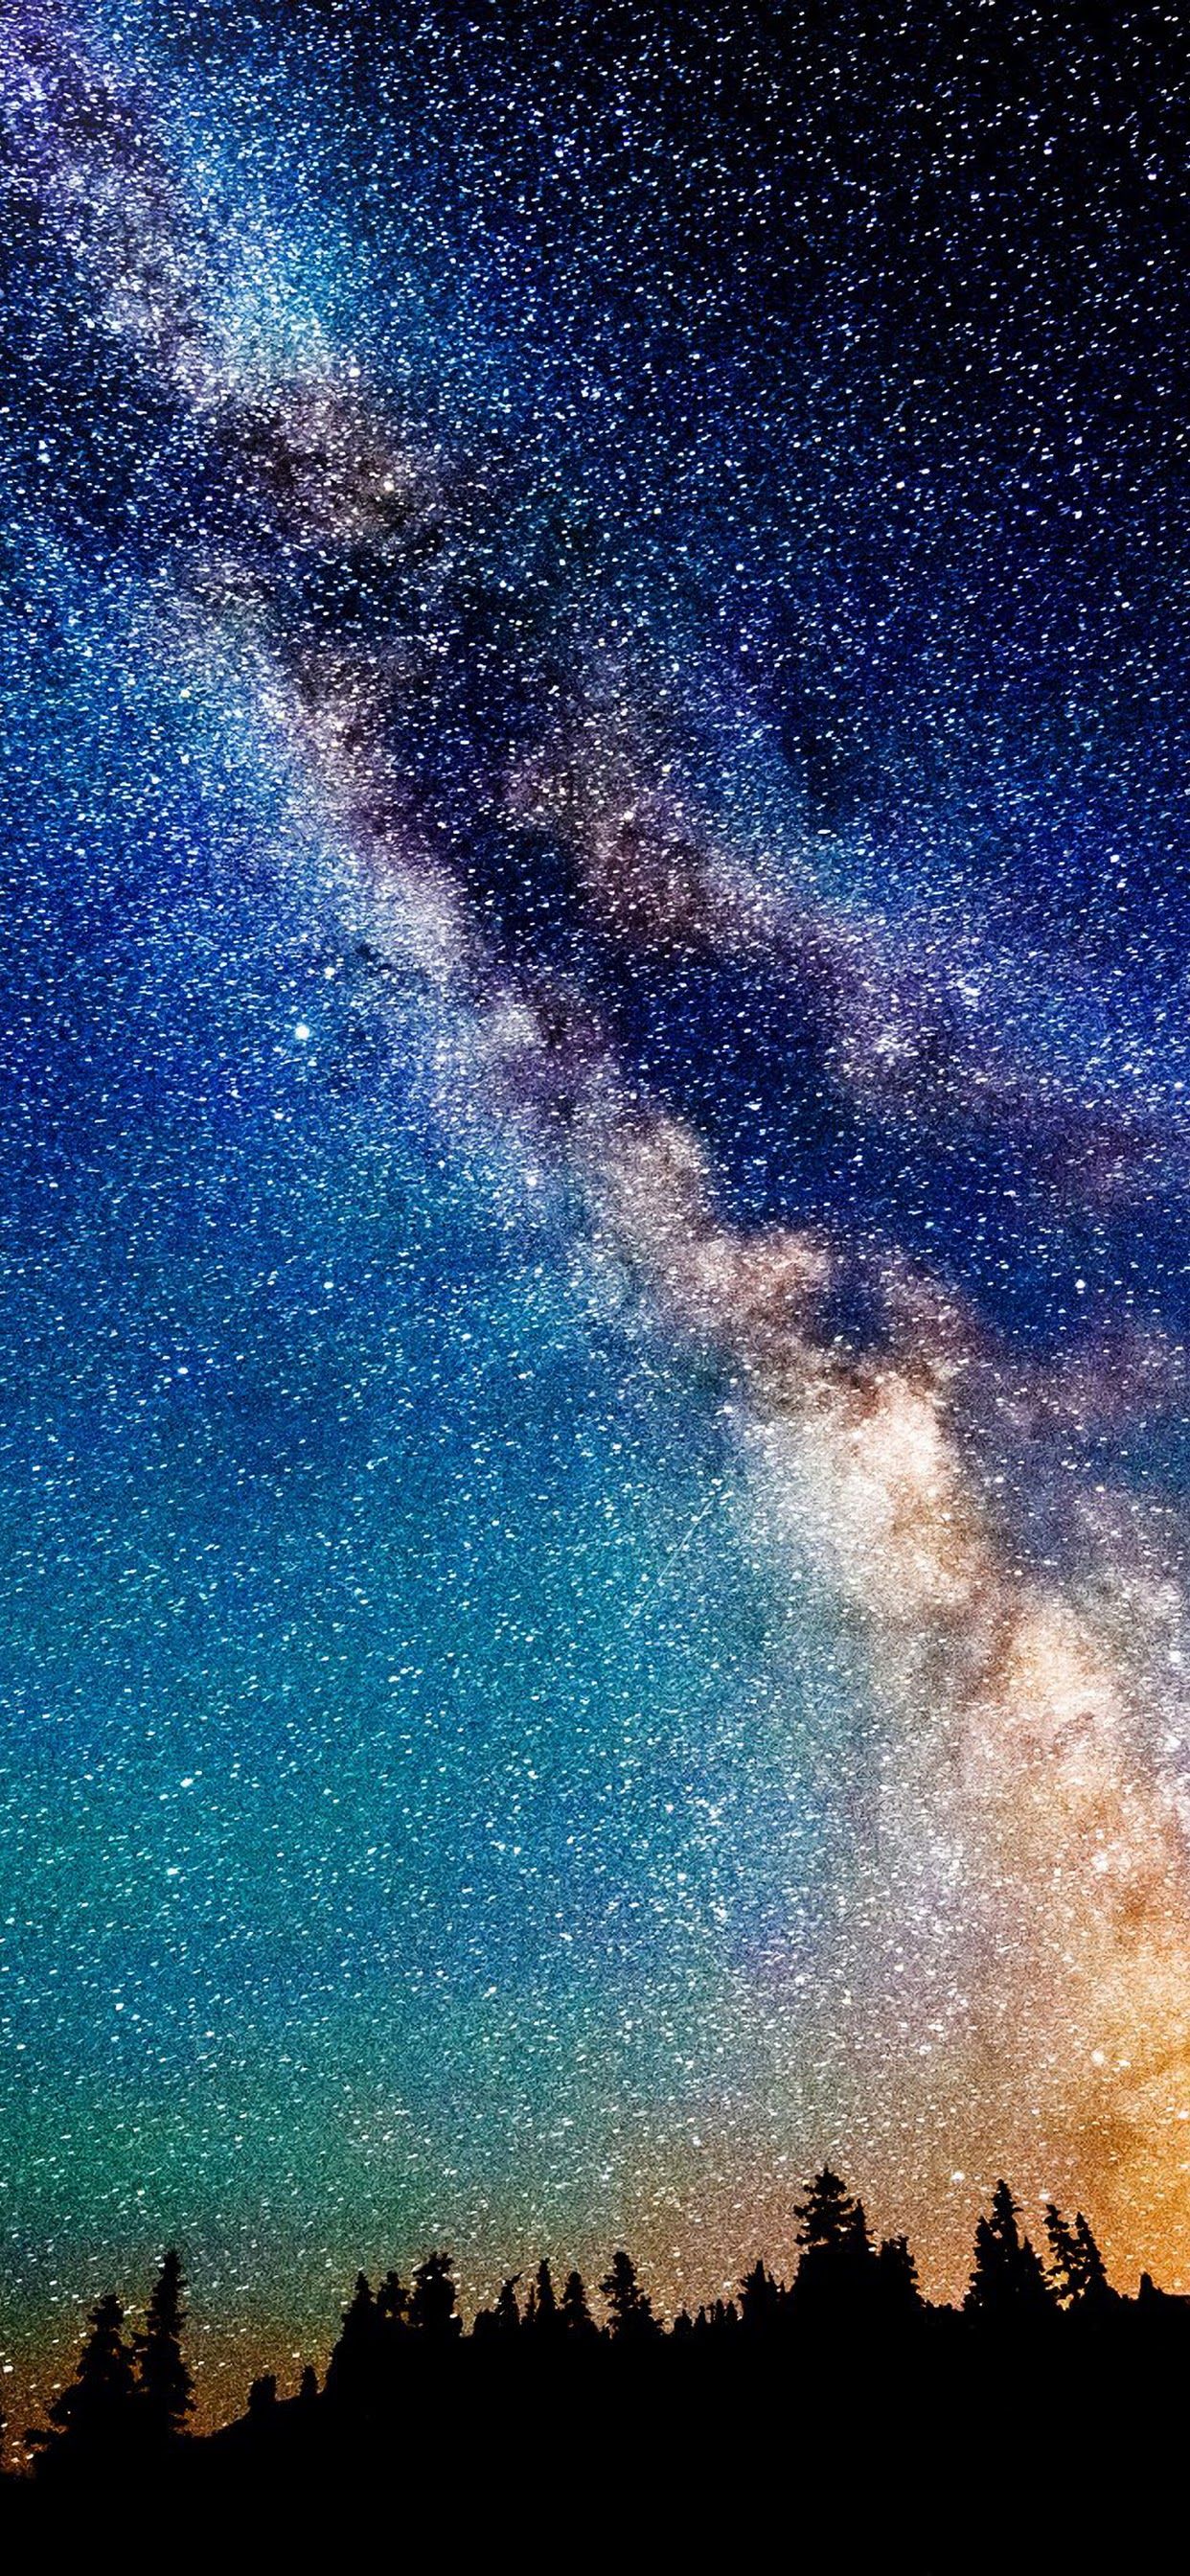 Hình nền Thiên hà Vía Lactea: Những hình nền với chủ đề Thiên hà Vía Lactea là lựa chọn hoàn hảo cho những ai yêu thích khám phá những điều phi thường. Truy cập để cập nhật những hình nền tuyệt đẹp và trải nghiệm cảm giác như đang ngắm nhìn trời đêm ngoài trời.